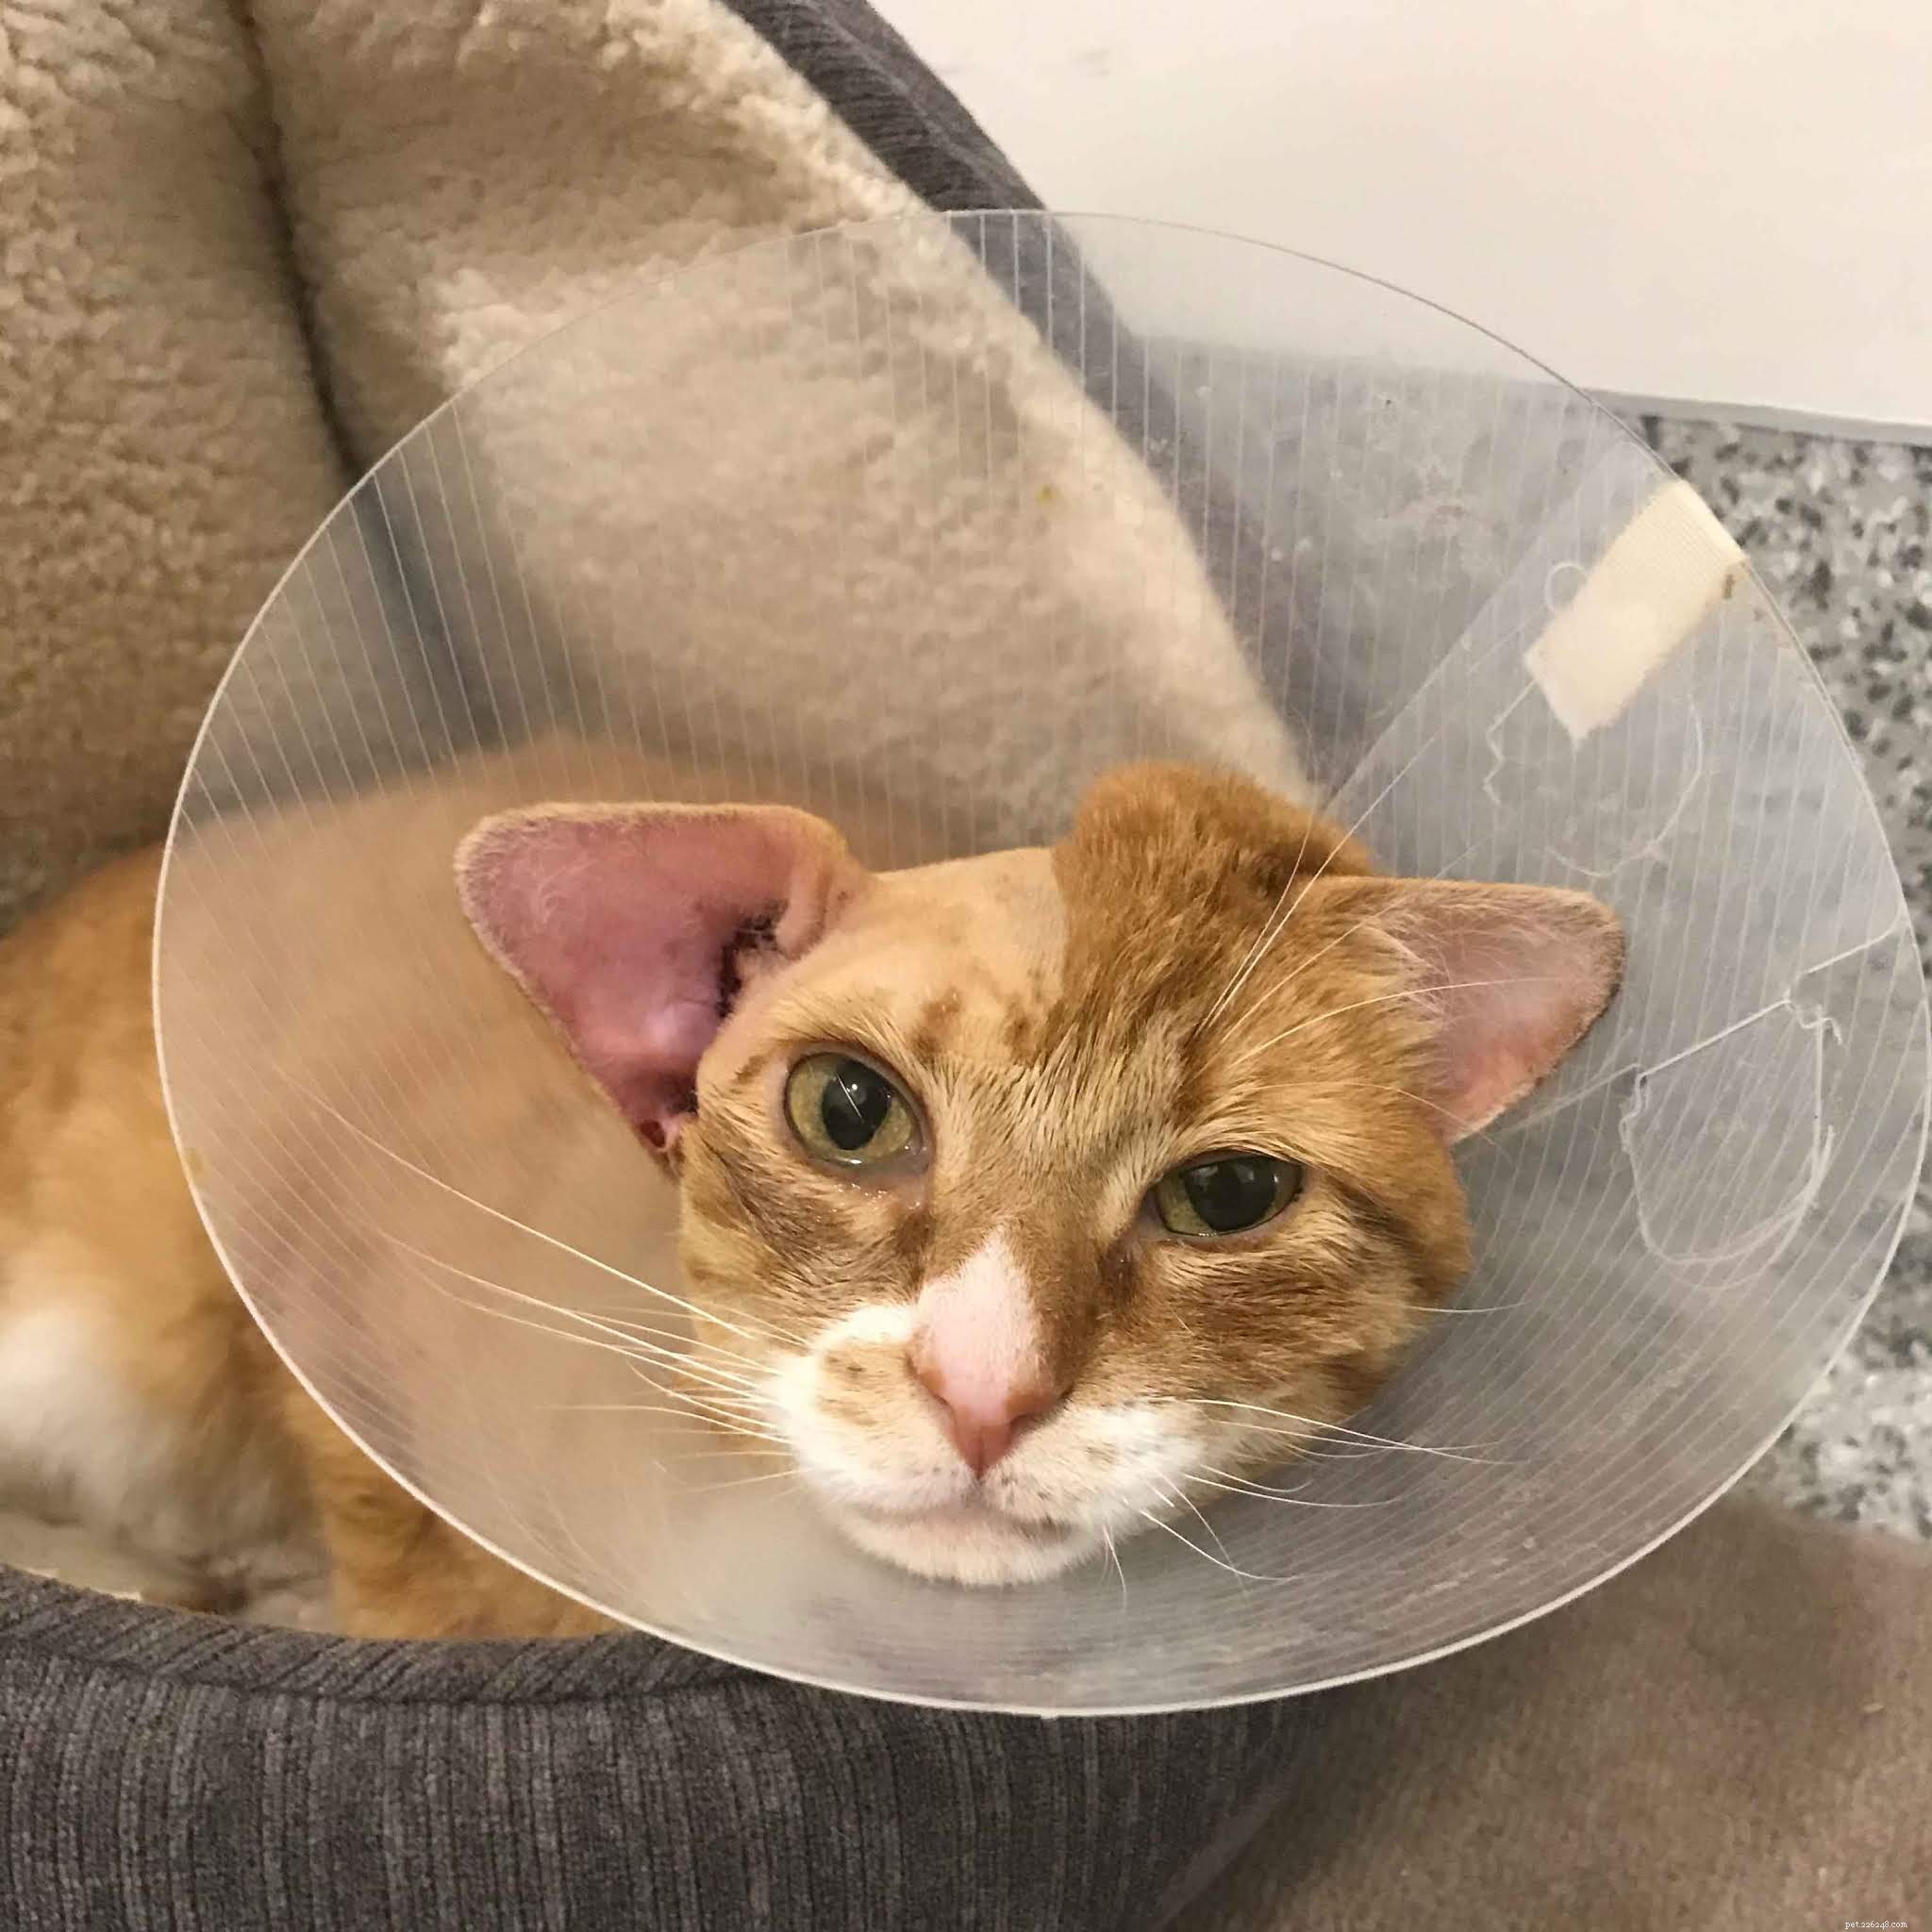 Пожалуйста, помогите нам покрыть расходы на операцию по удалению опухоли и последующий уход за великолепным рыжим котом Маршаллом.